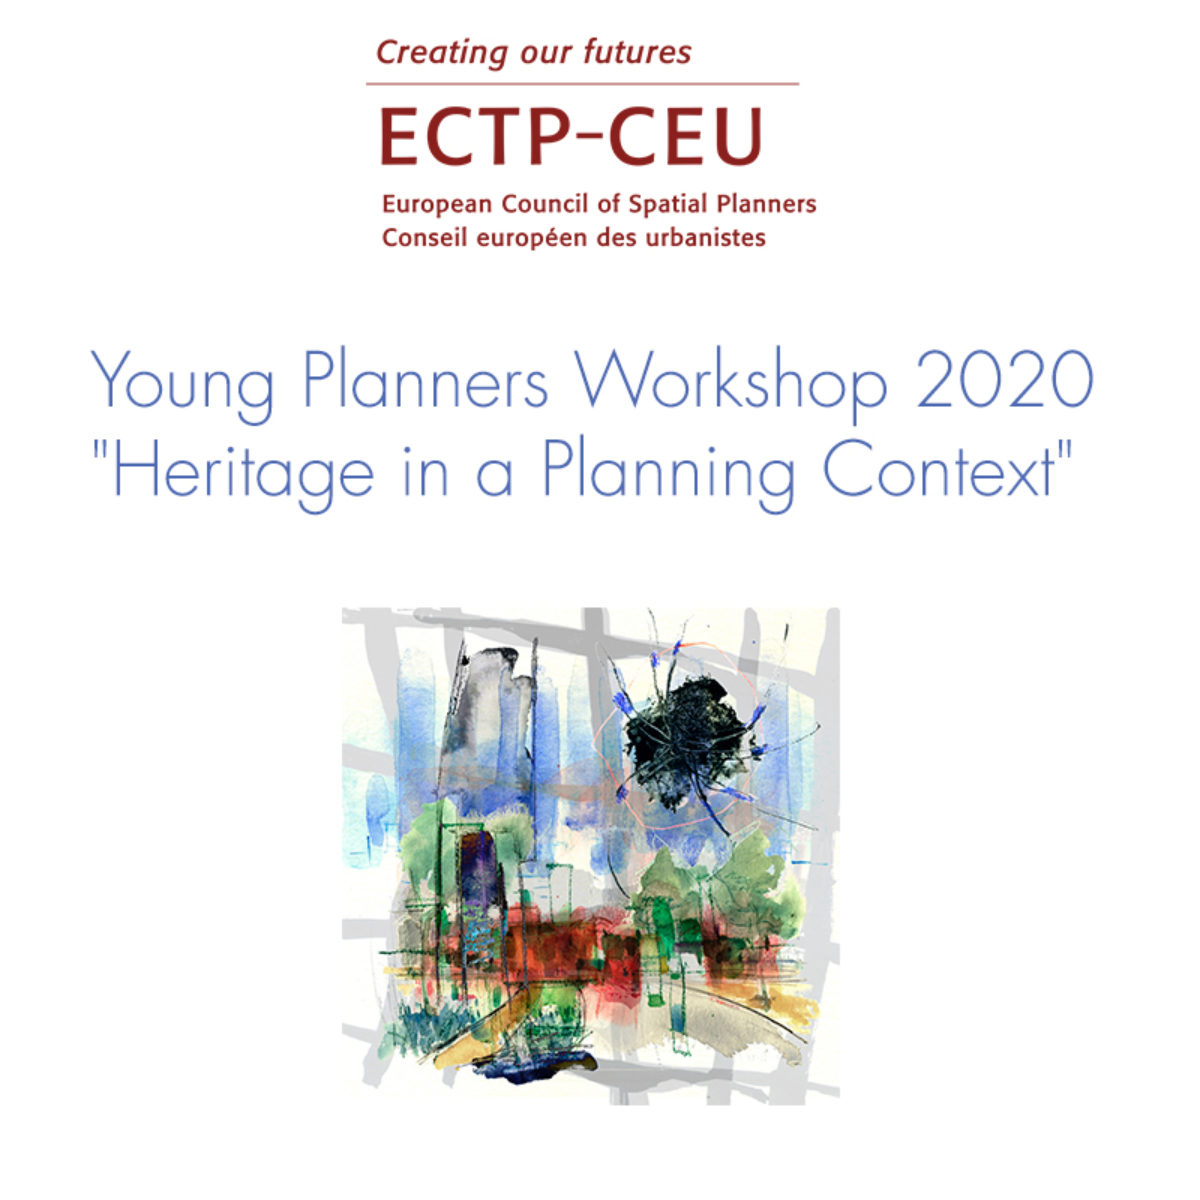 Το διεθνές εργαστήριο νέων πολεοδόμων-χωροτακτών του ECTP-CEU “Young Planners Workshop 2020”, θα φιλοξενήσει ο ΣΕΠΟΧ τον Οκτώβριο του 2020 στην Αθήνα